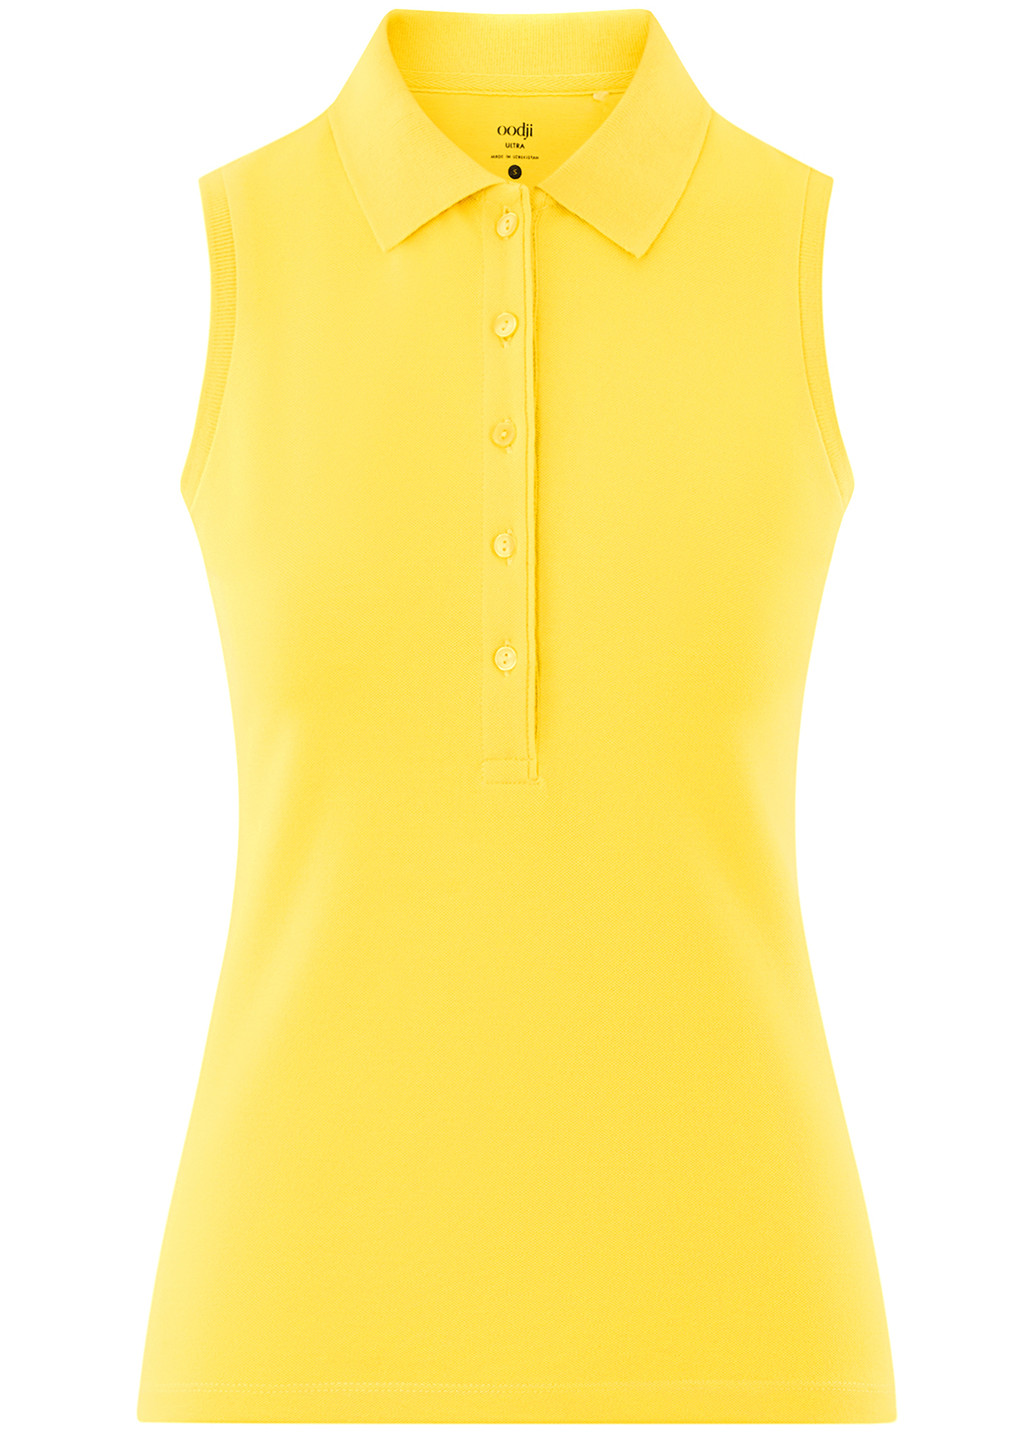 Желтая женская футболка-поло Oodji однотонная